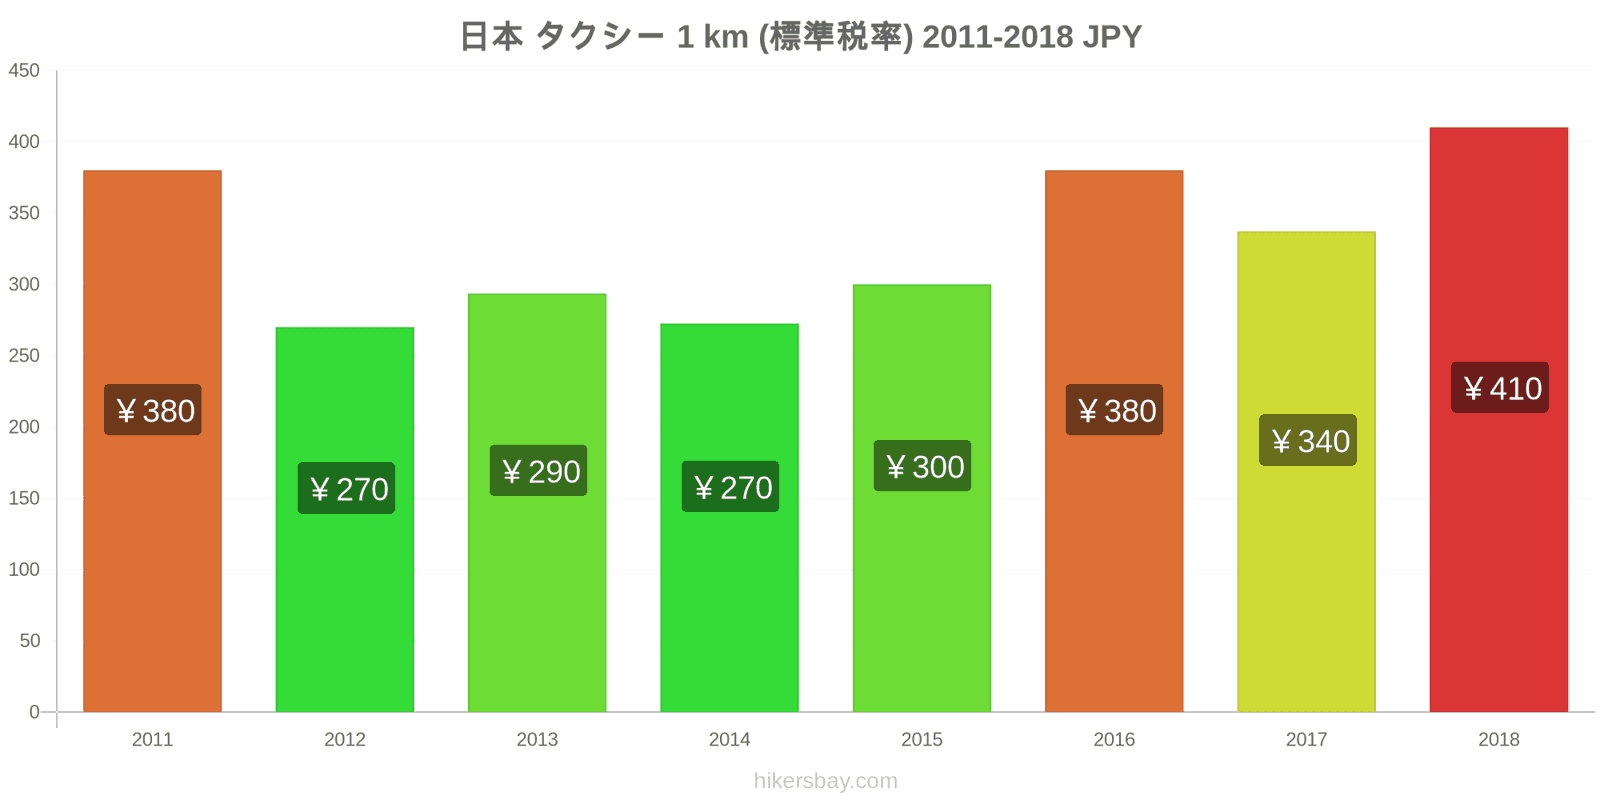 日本 価格の変更 タクシー 1km（通常料金） hikersbay.com